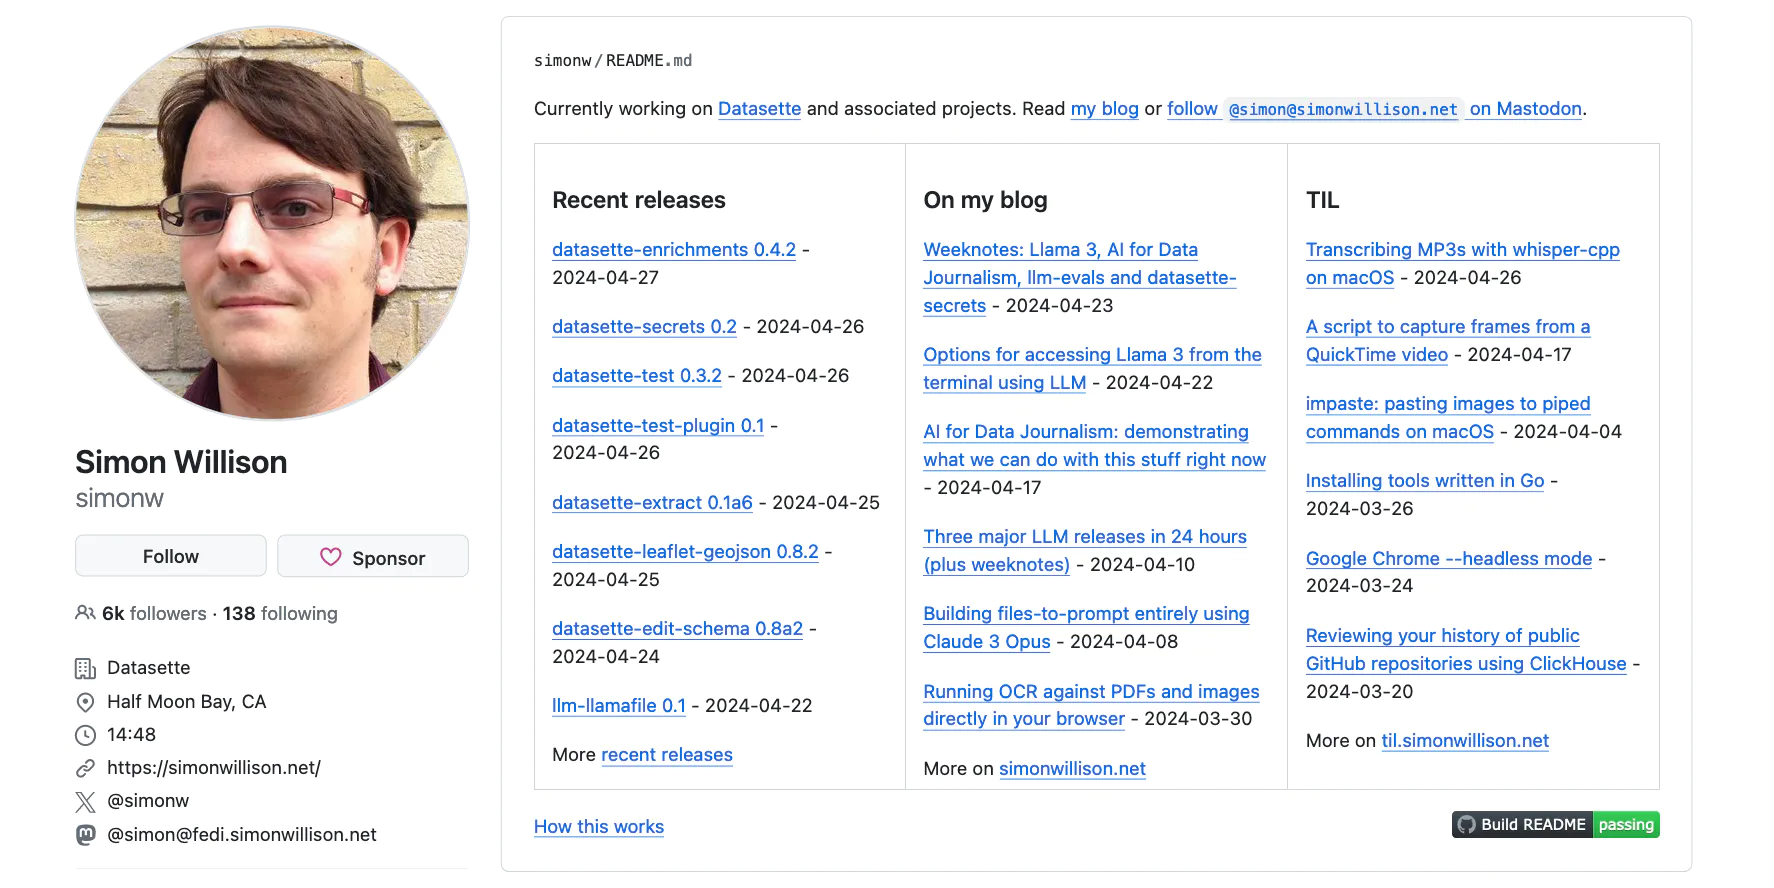 Captura de pantalla del perfil de GitHub de Simon Willison, mostrando tres columnas: lanzamientos recientes, en mi blog y TIL (Hoy Aprendí).